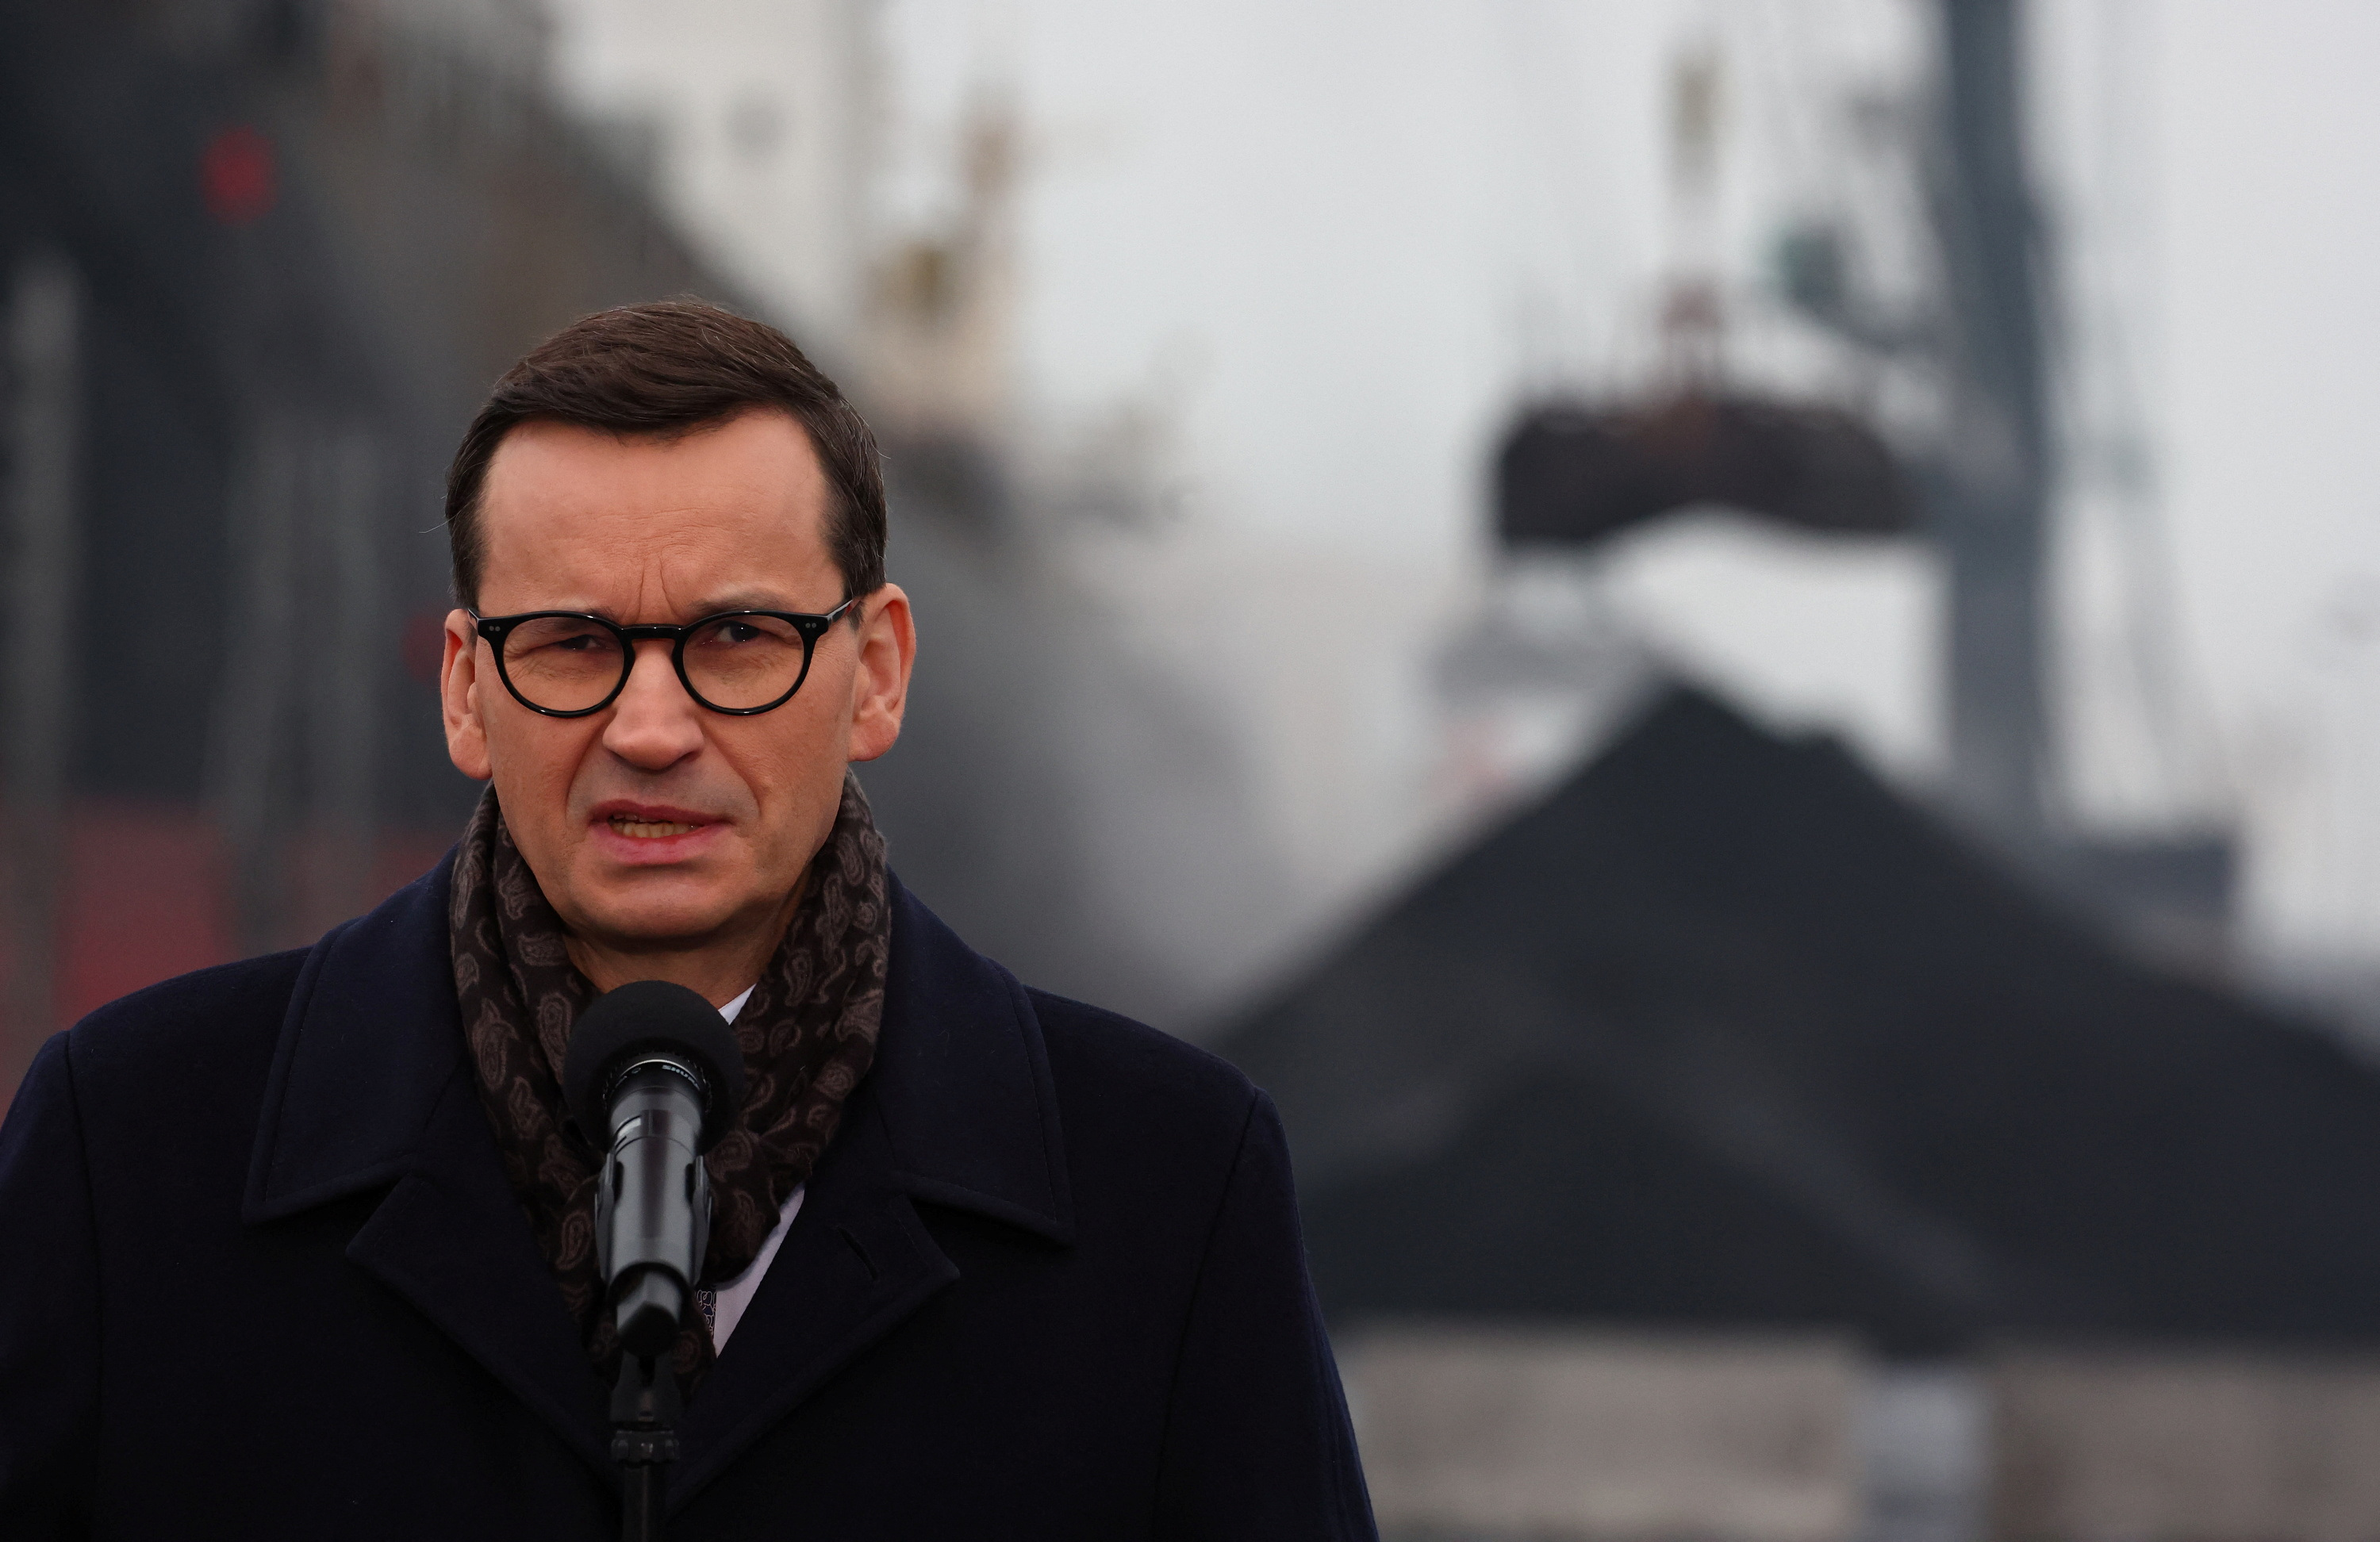 Polish PM Morawiecki talks during a briefing at the coal storage in Port Gdanski Eksploatacja, Gdansk